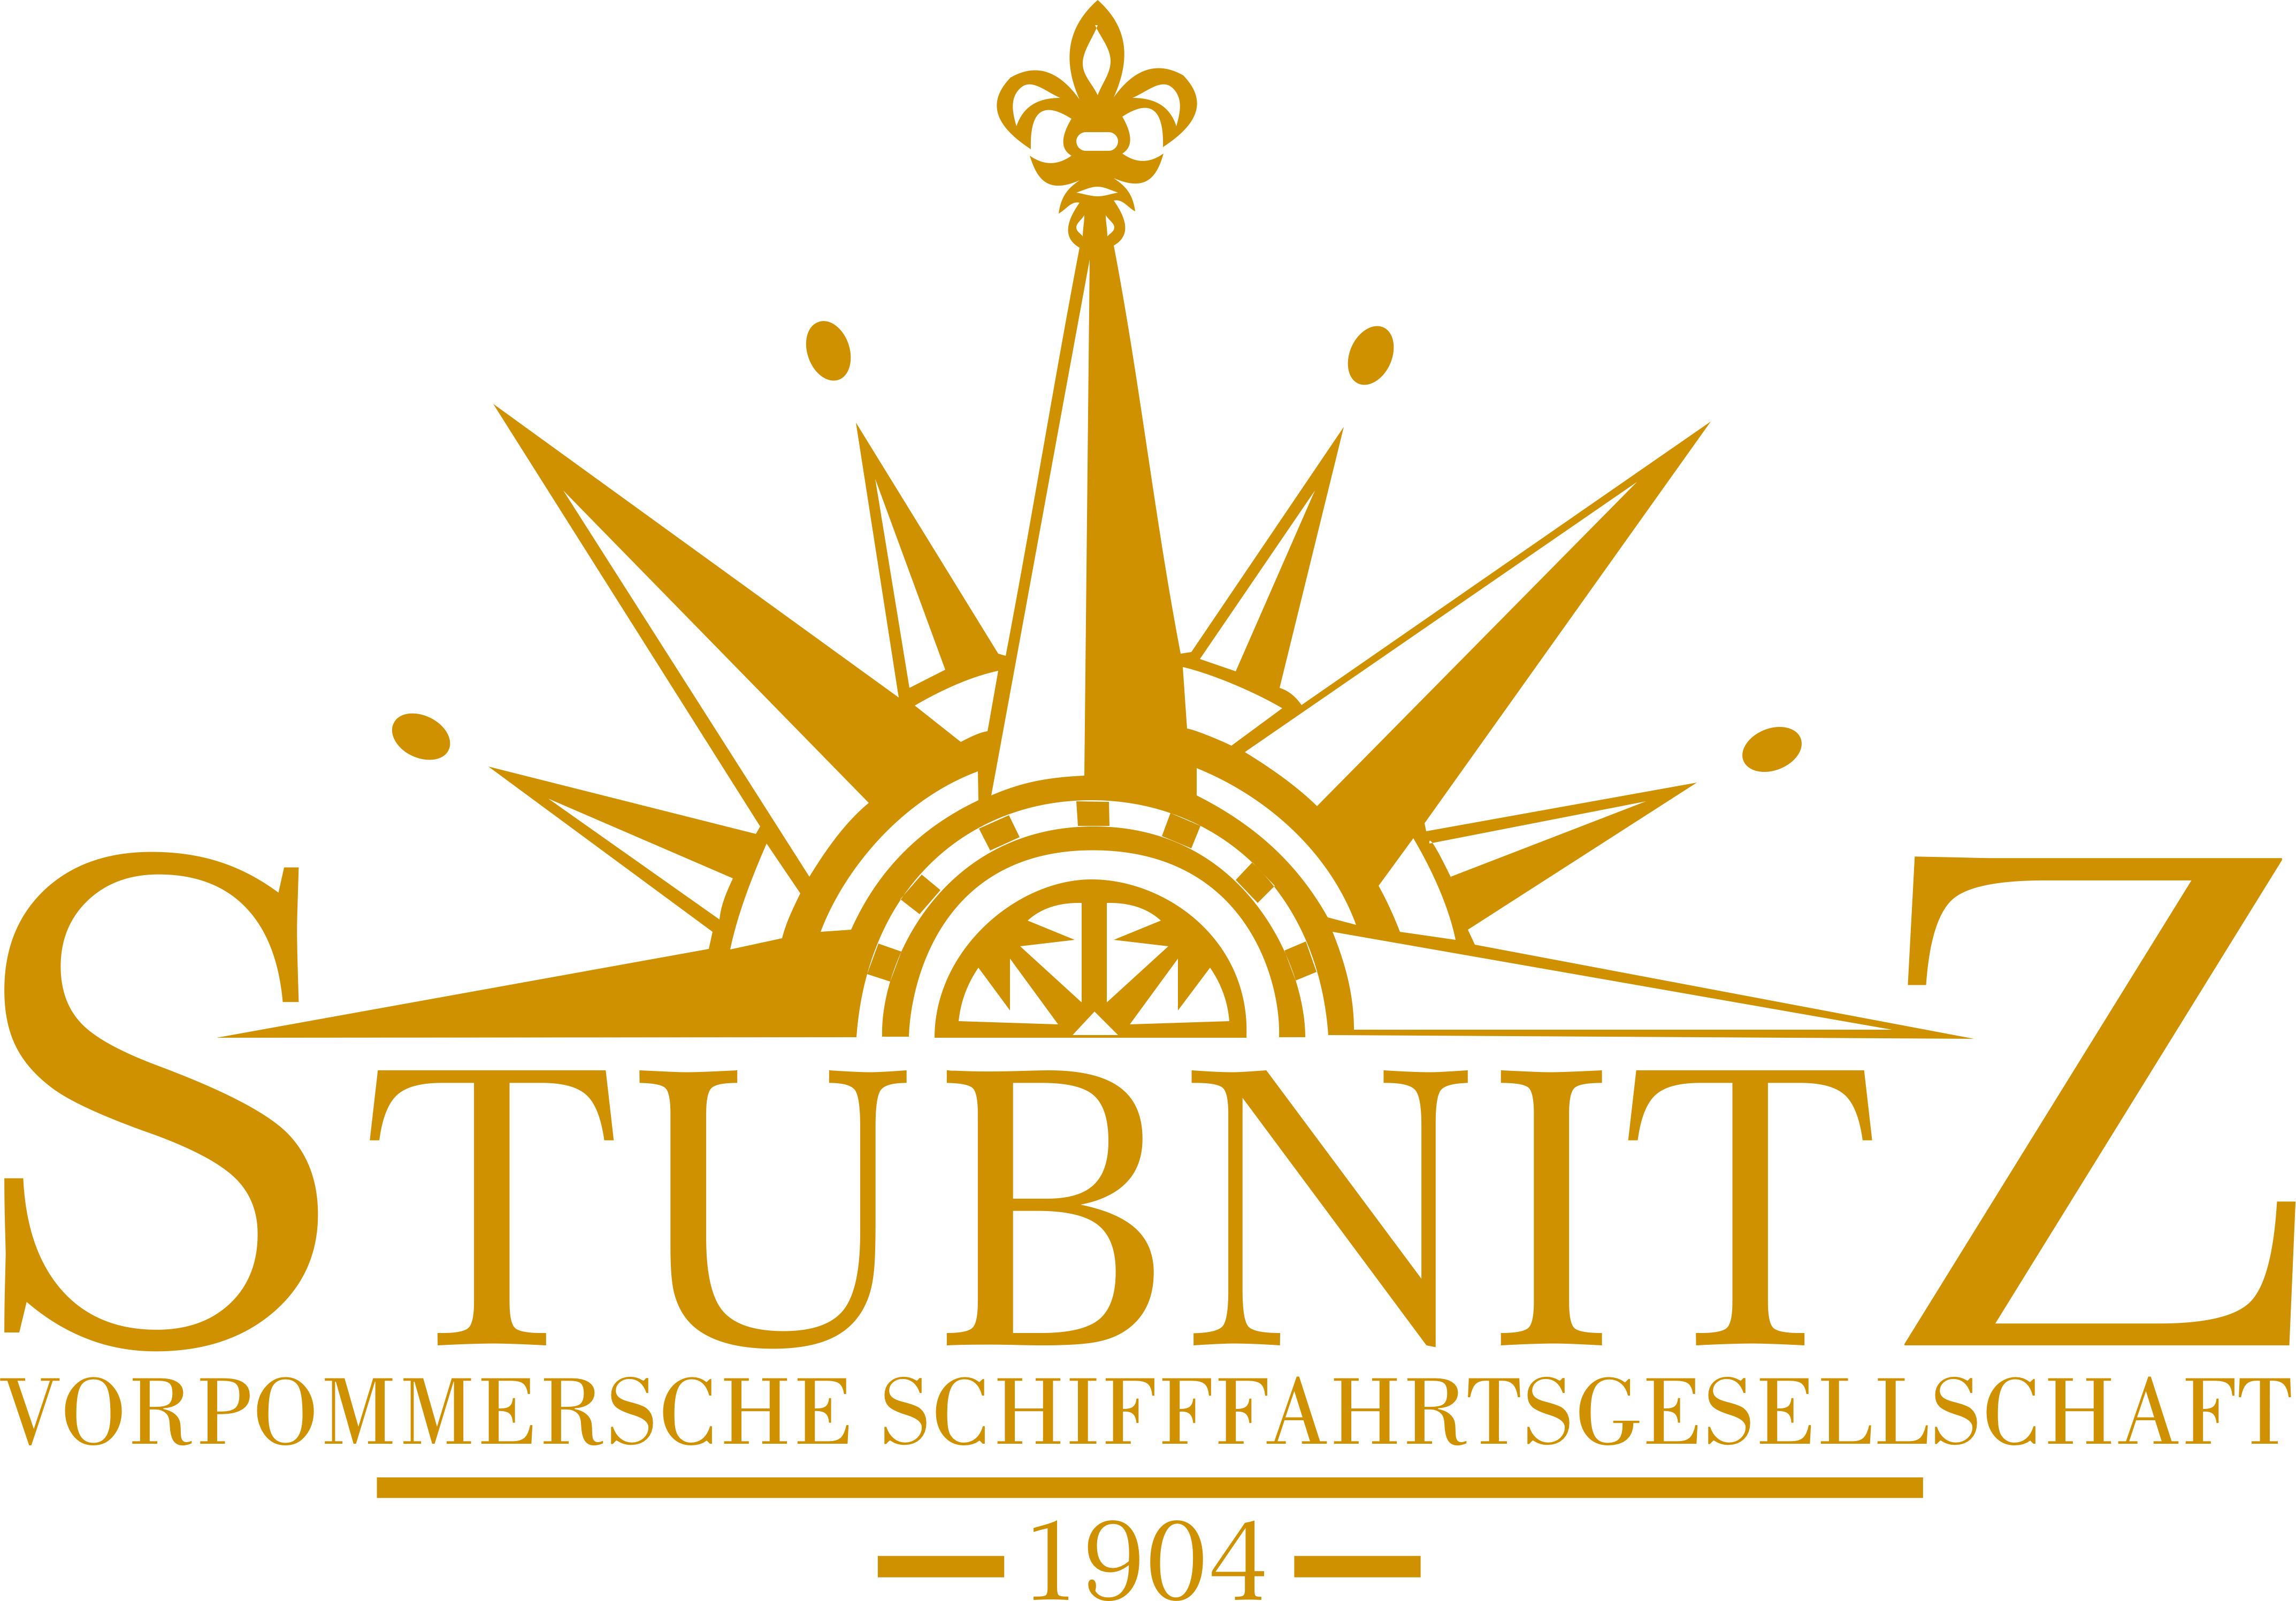 Stubnitz logo